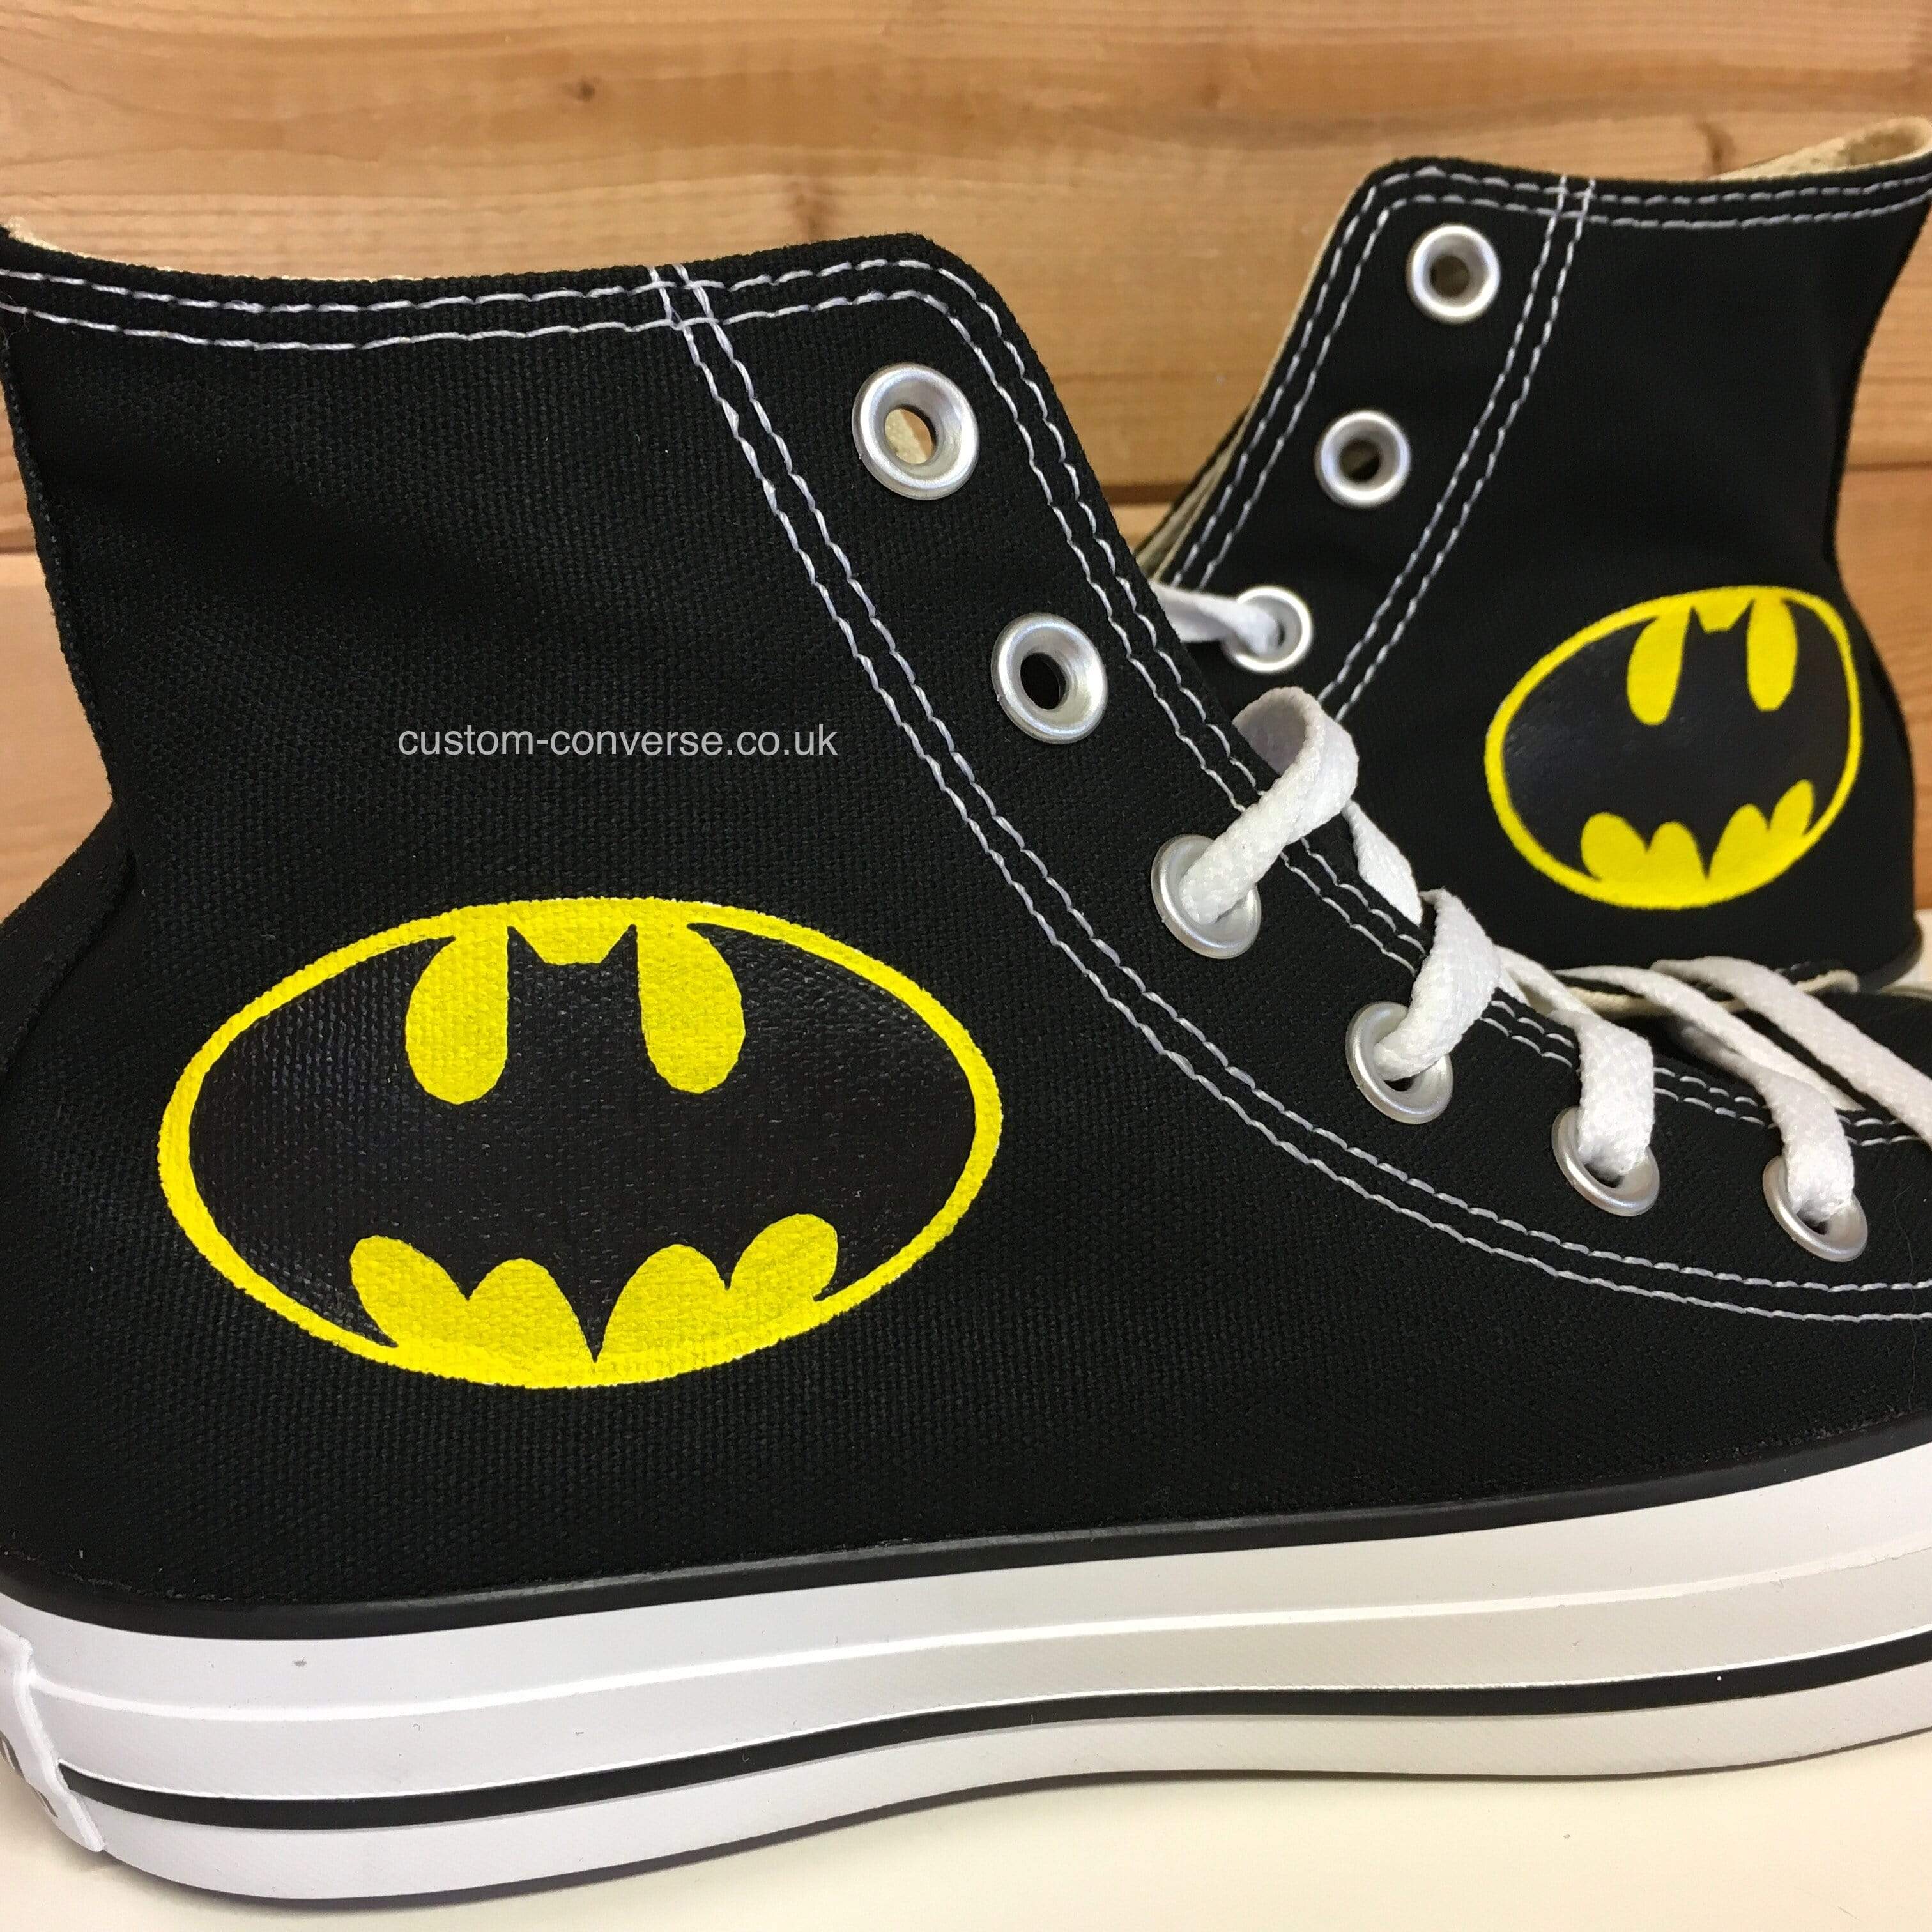 Batman Tops Converse Ltd